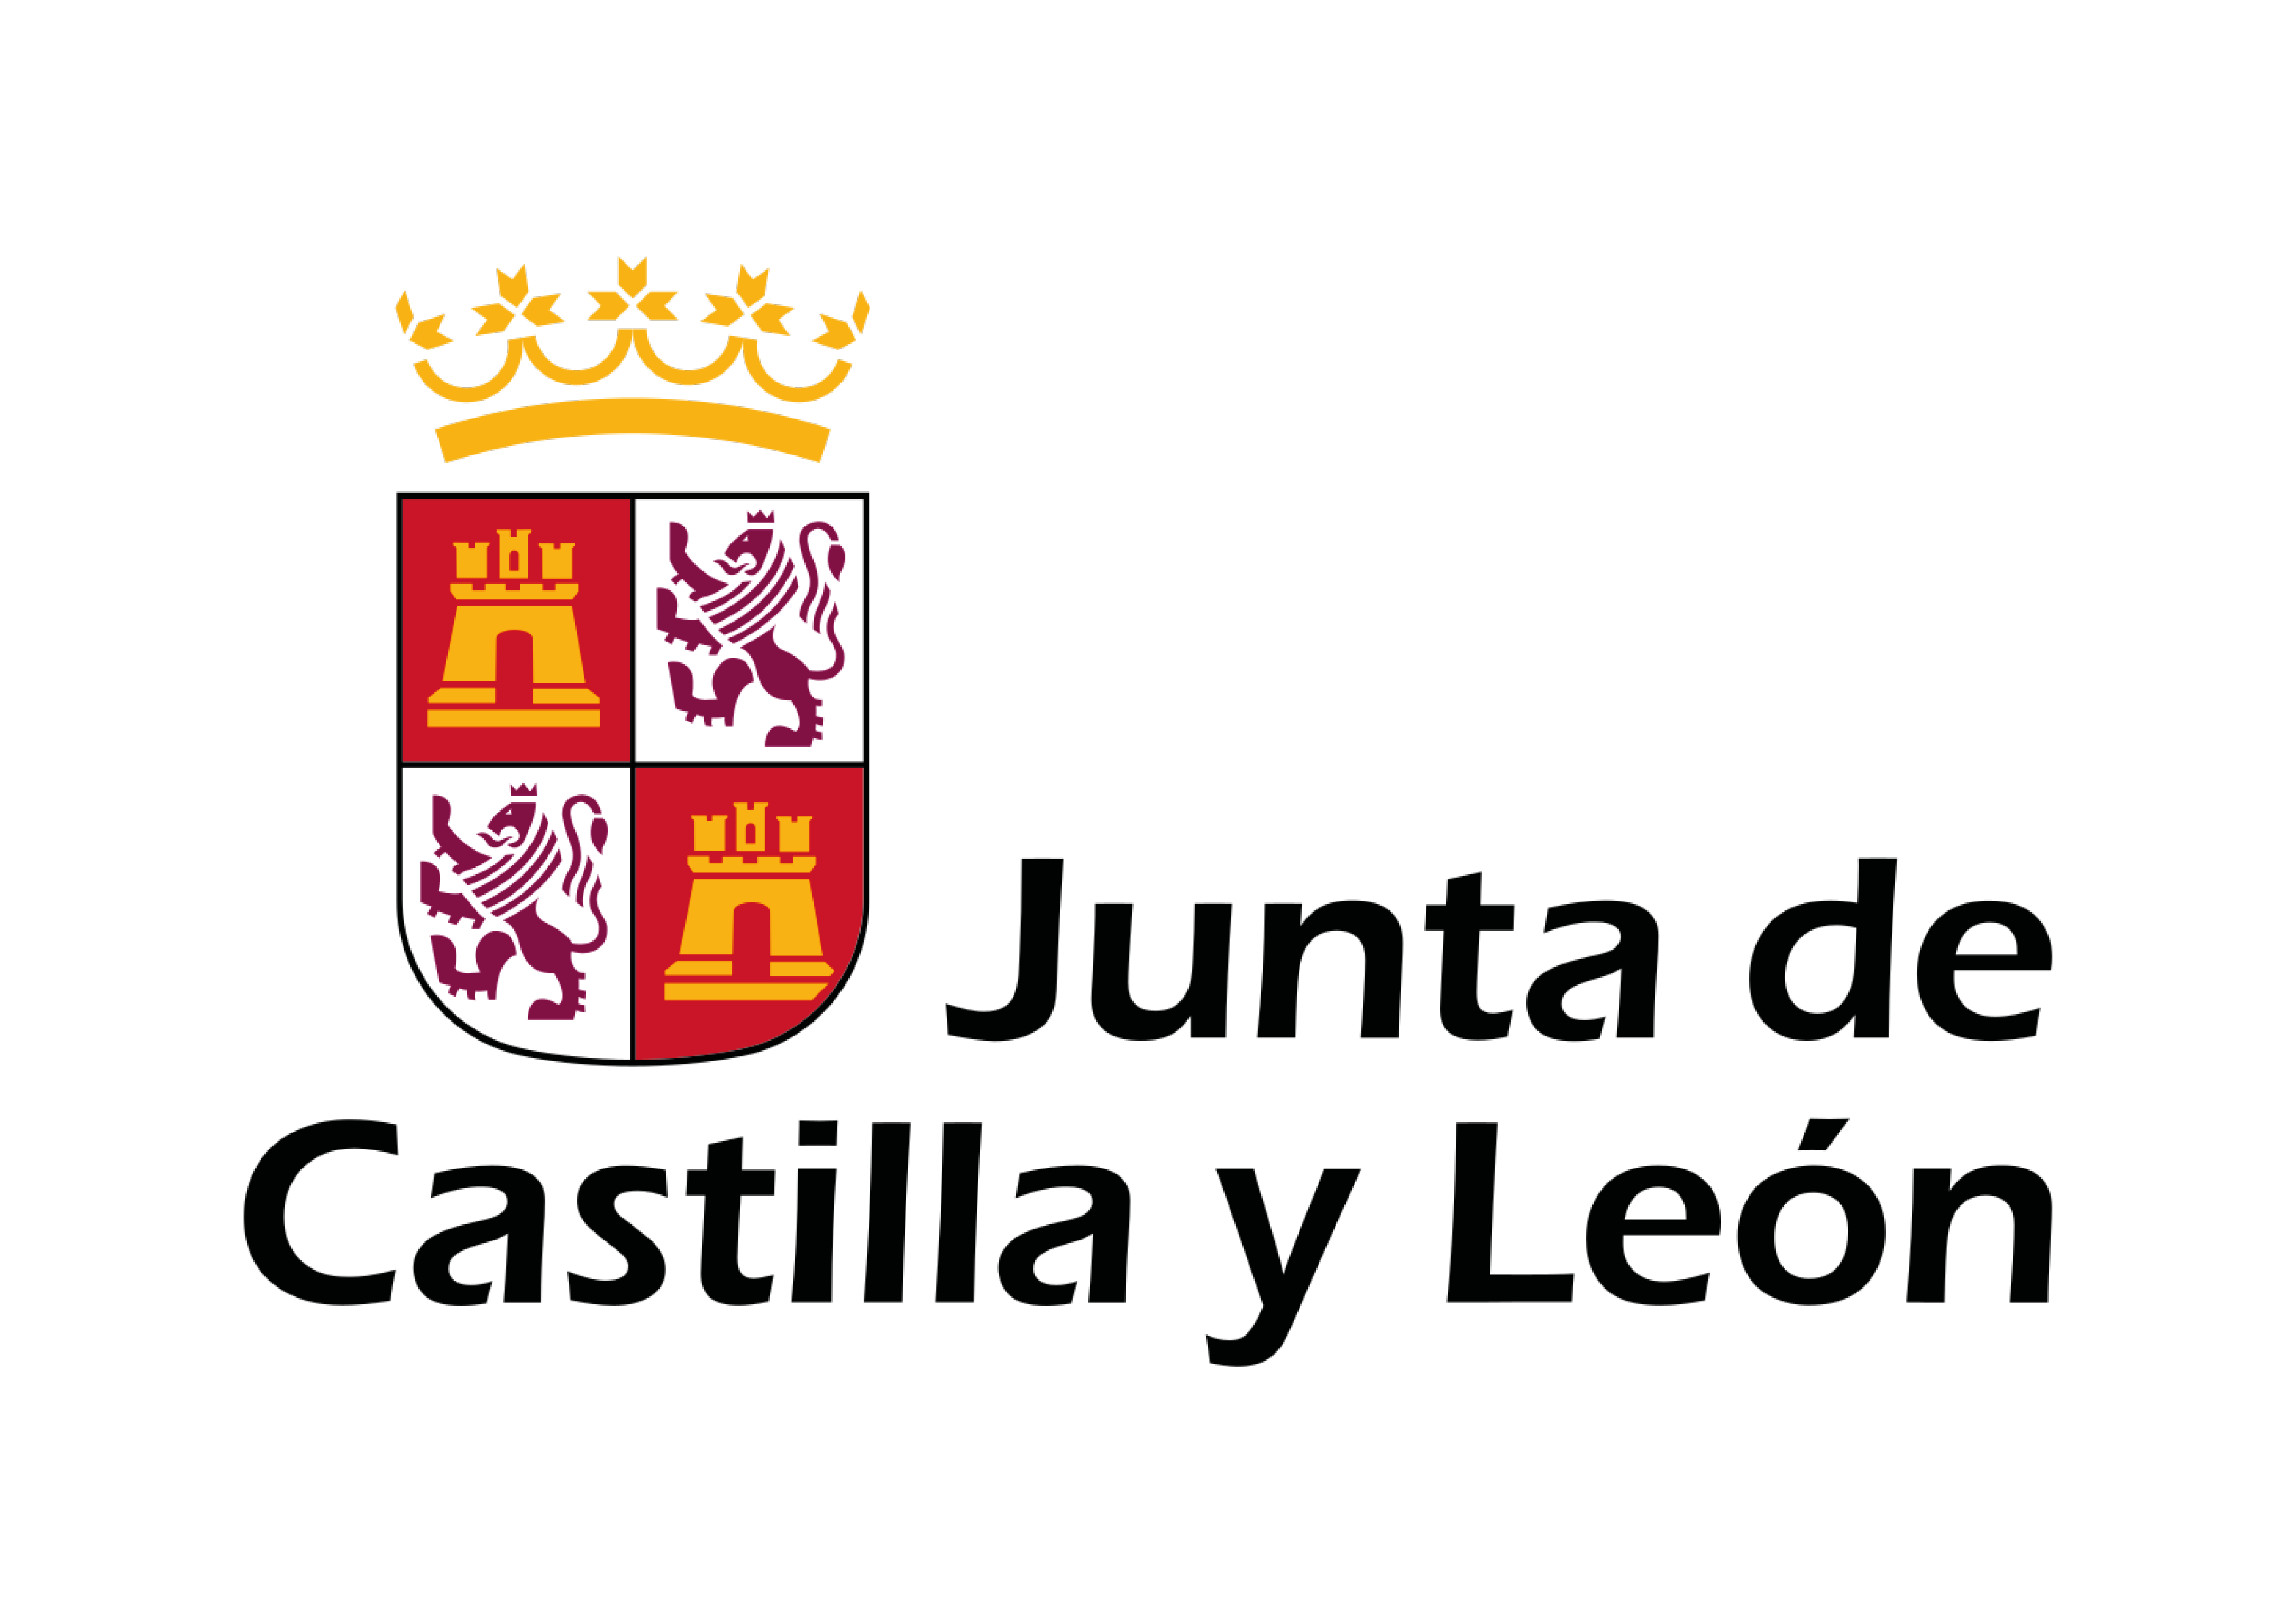 Junta Castilla y León logotipo